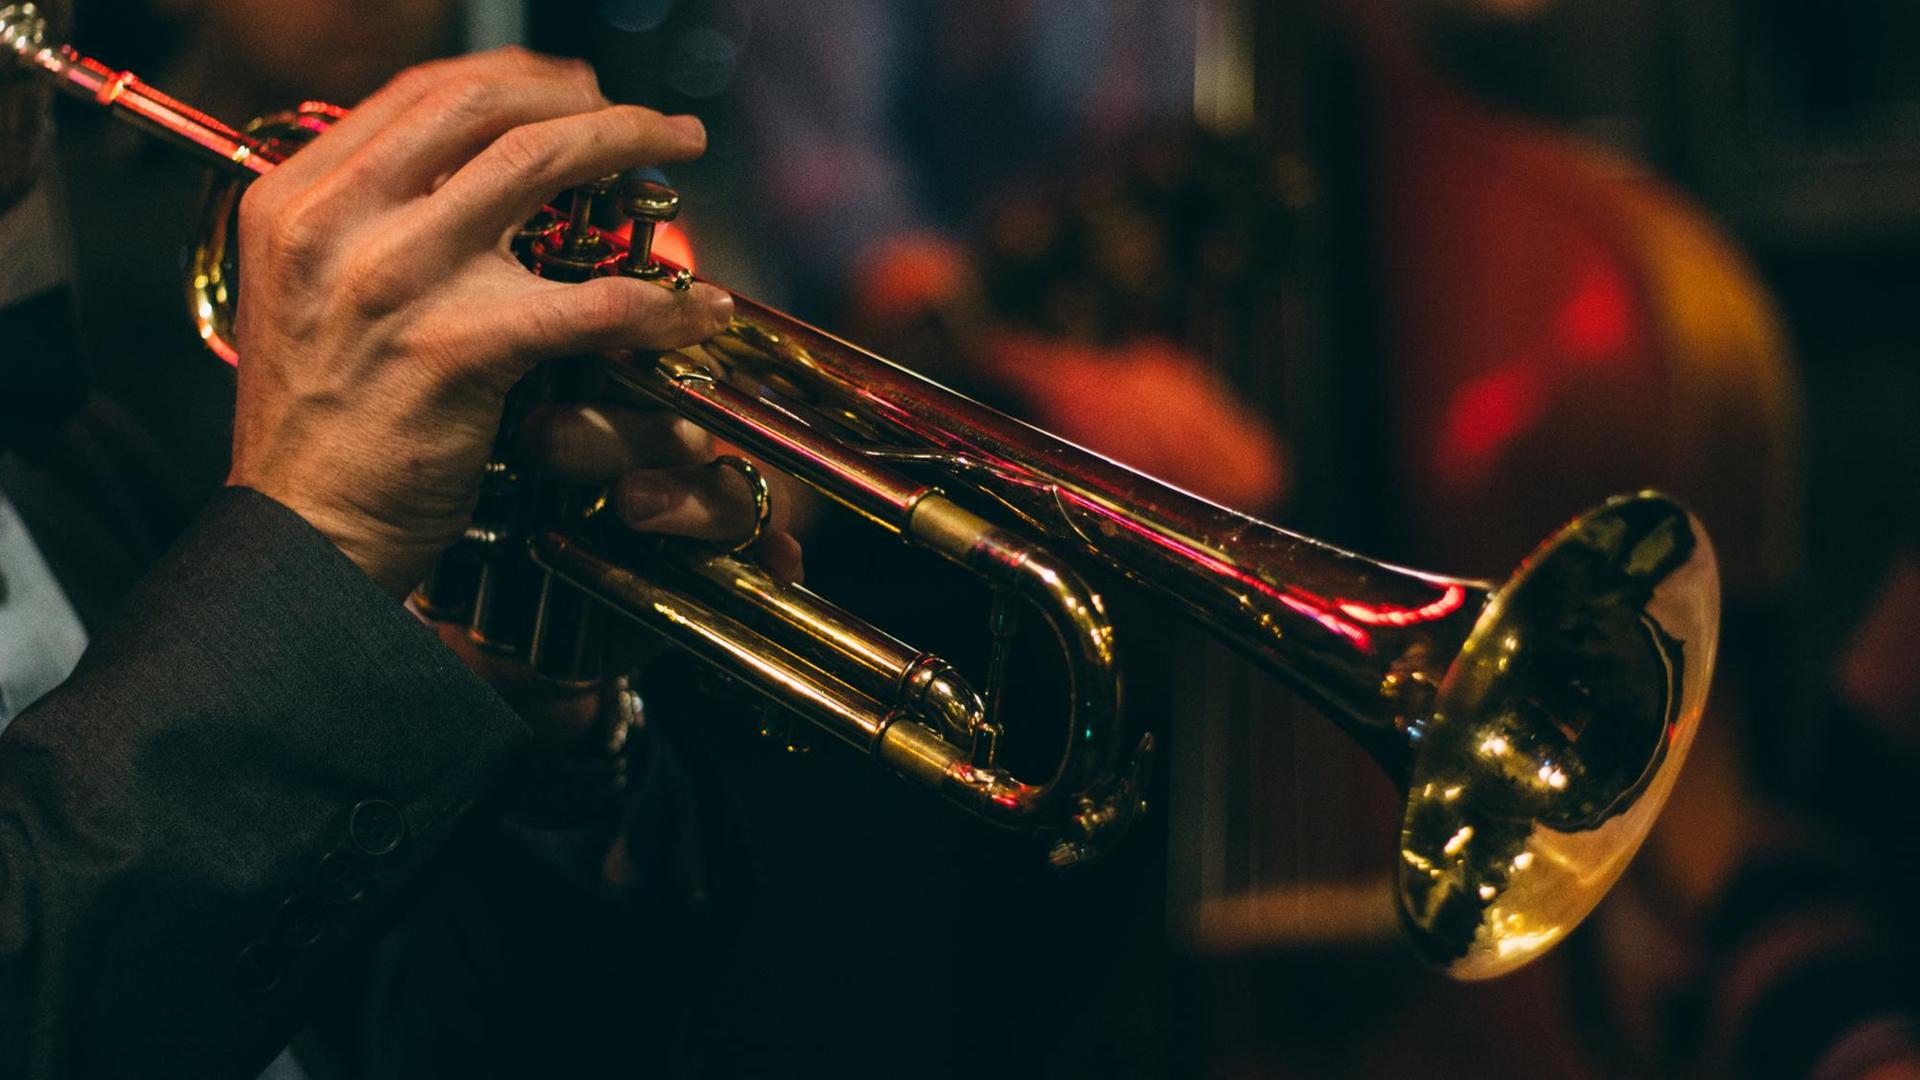 Detail einer Hand die auf einer Jazztrompete spielt. Im Hintergrund das stimmungsvolle Licht einer Bar.